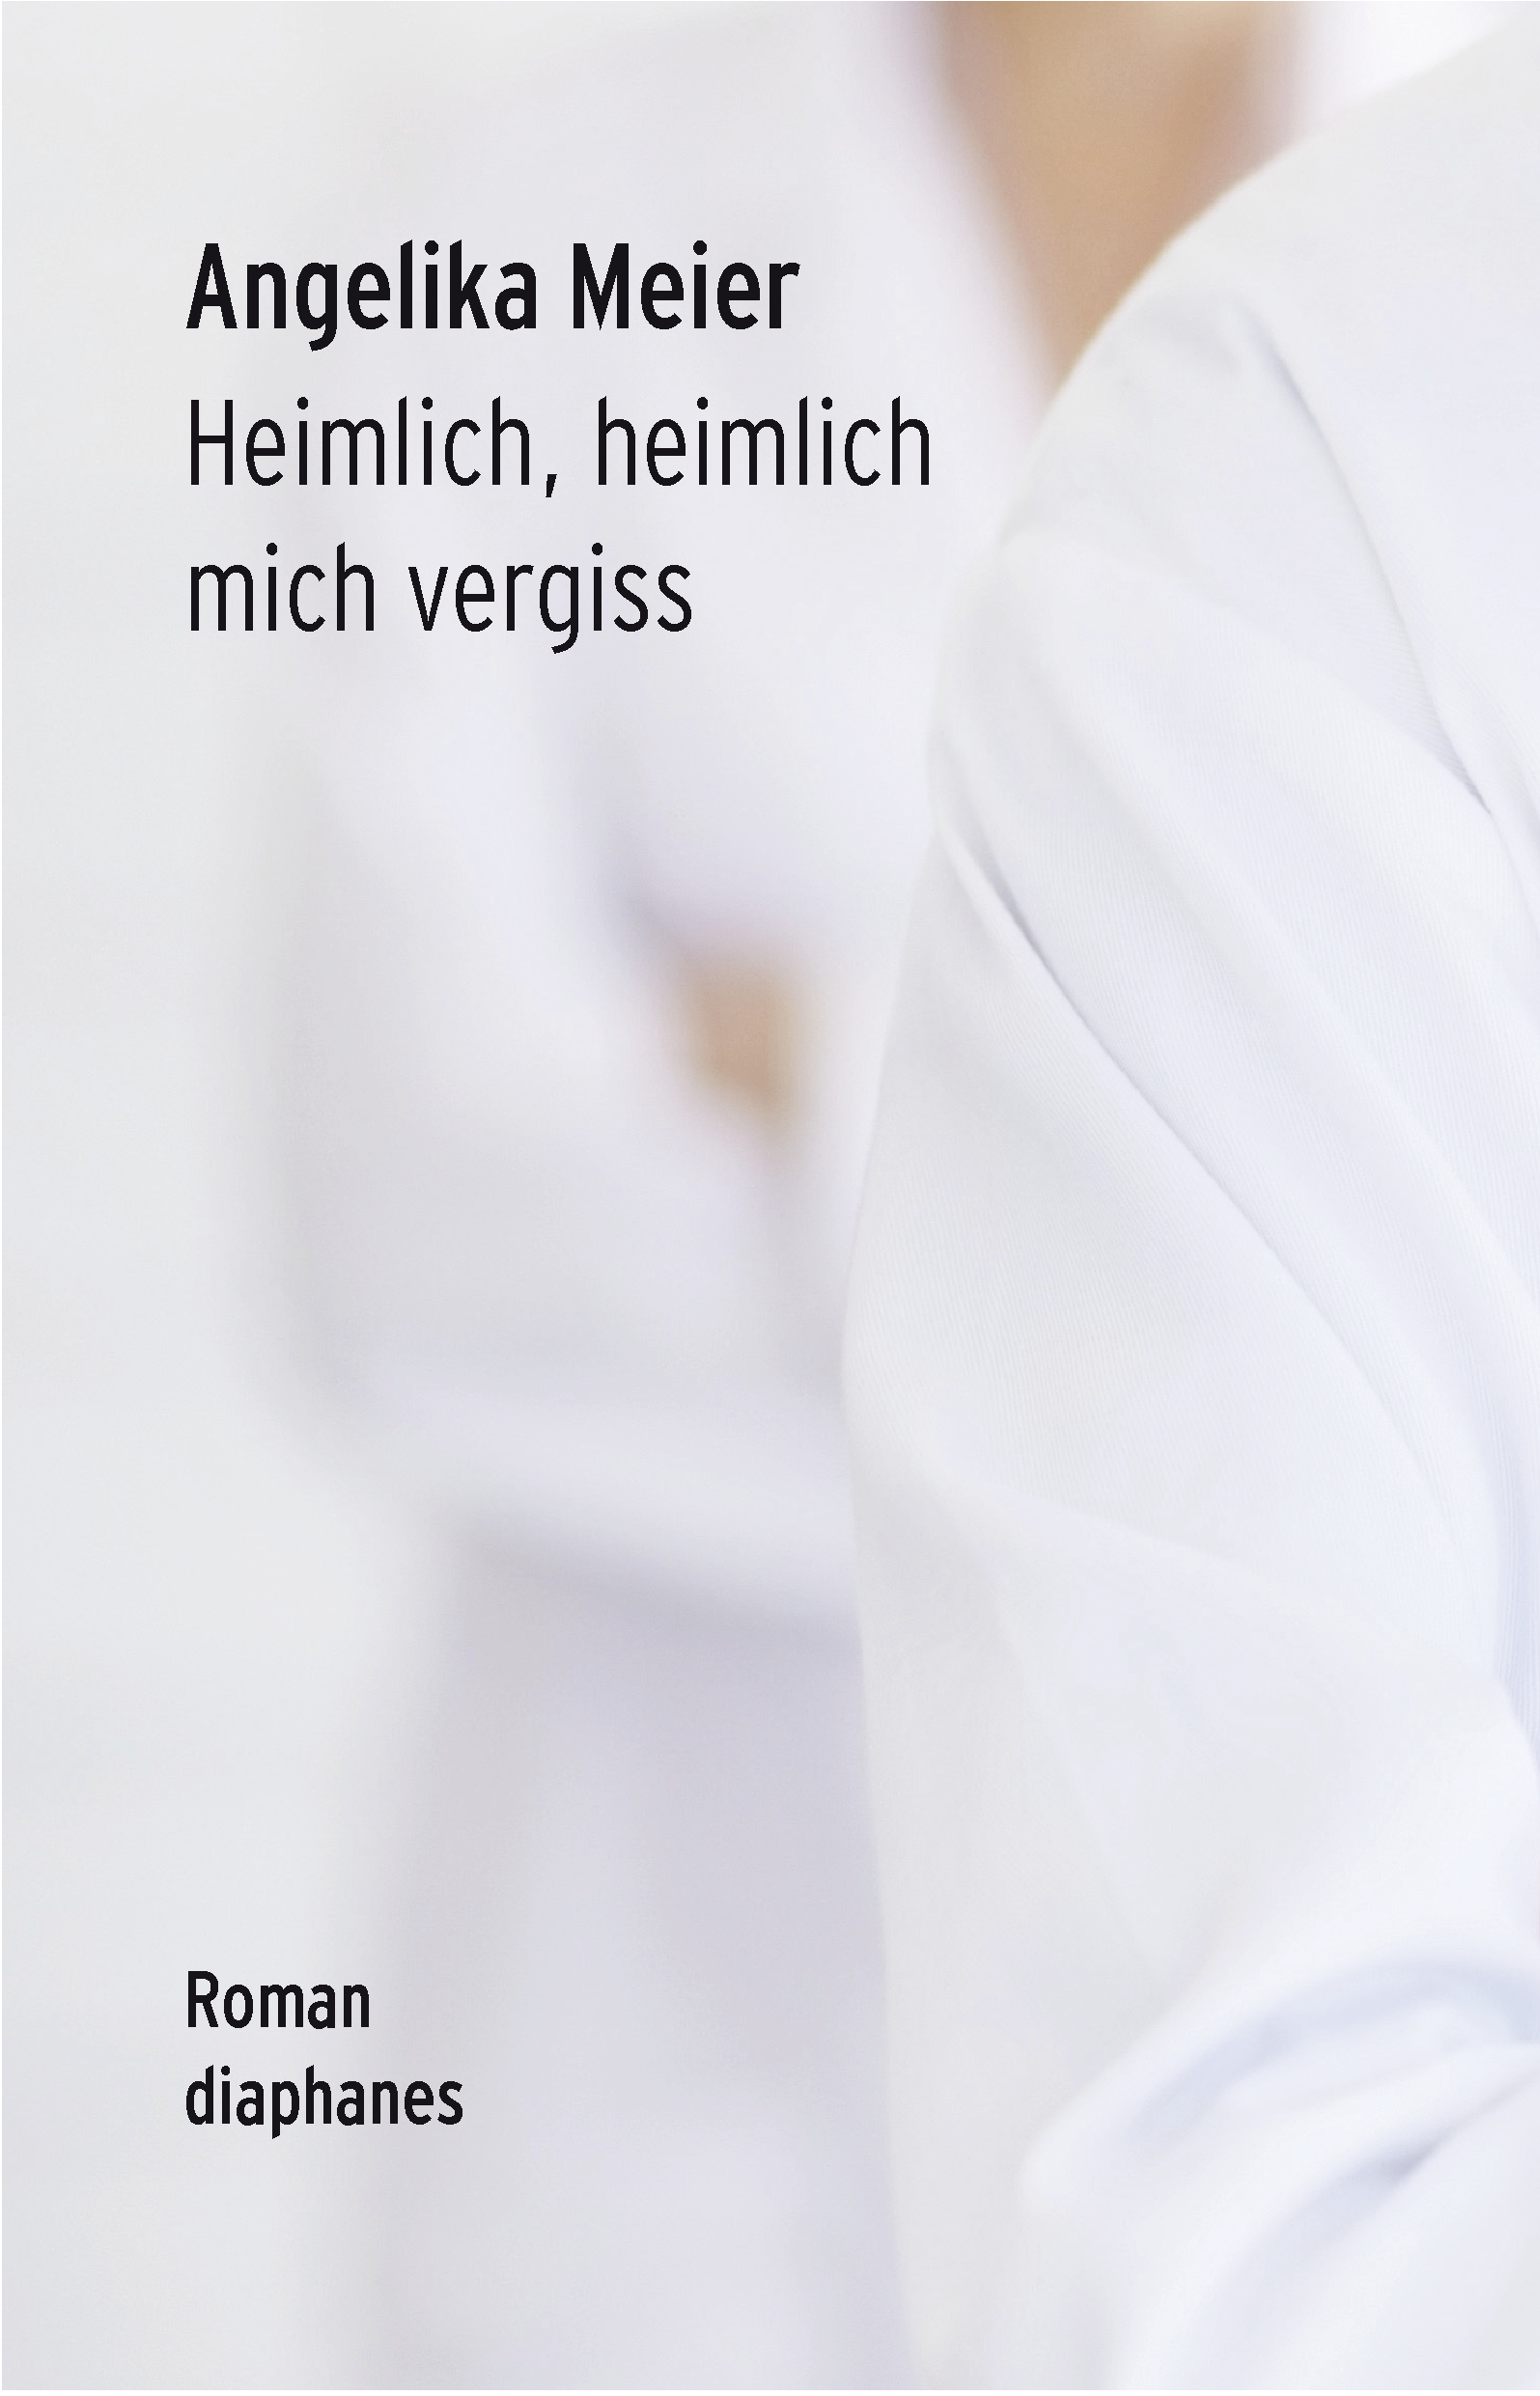 Image for Angelika Meier: "Heimlich, heimlich mich vergiss"